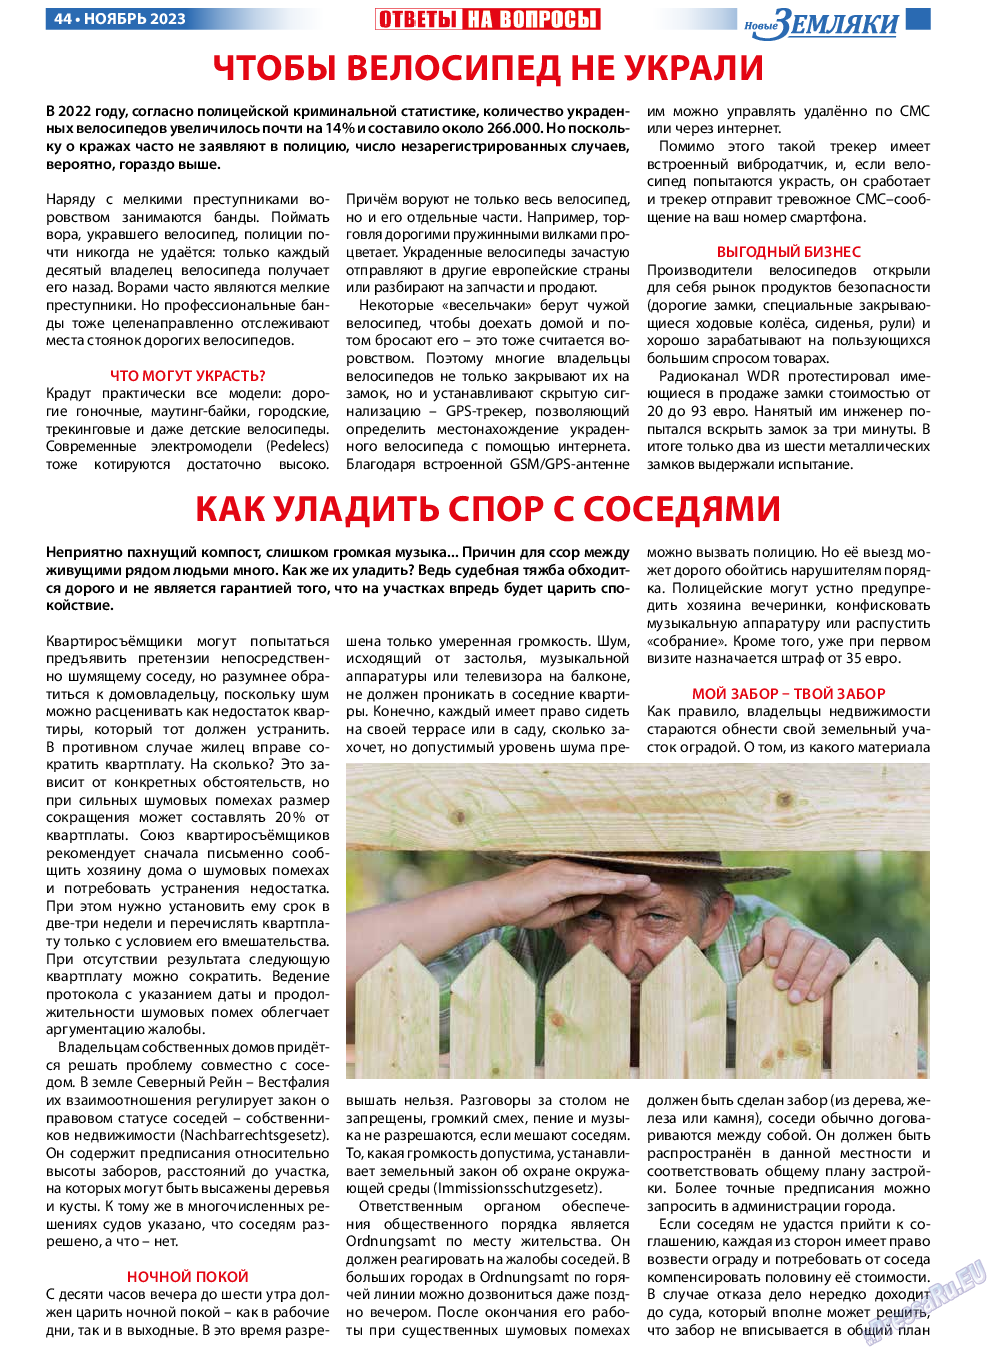 Новые Земляки, газета. 2023 №11 стр.44